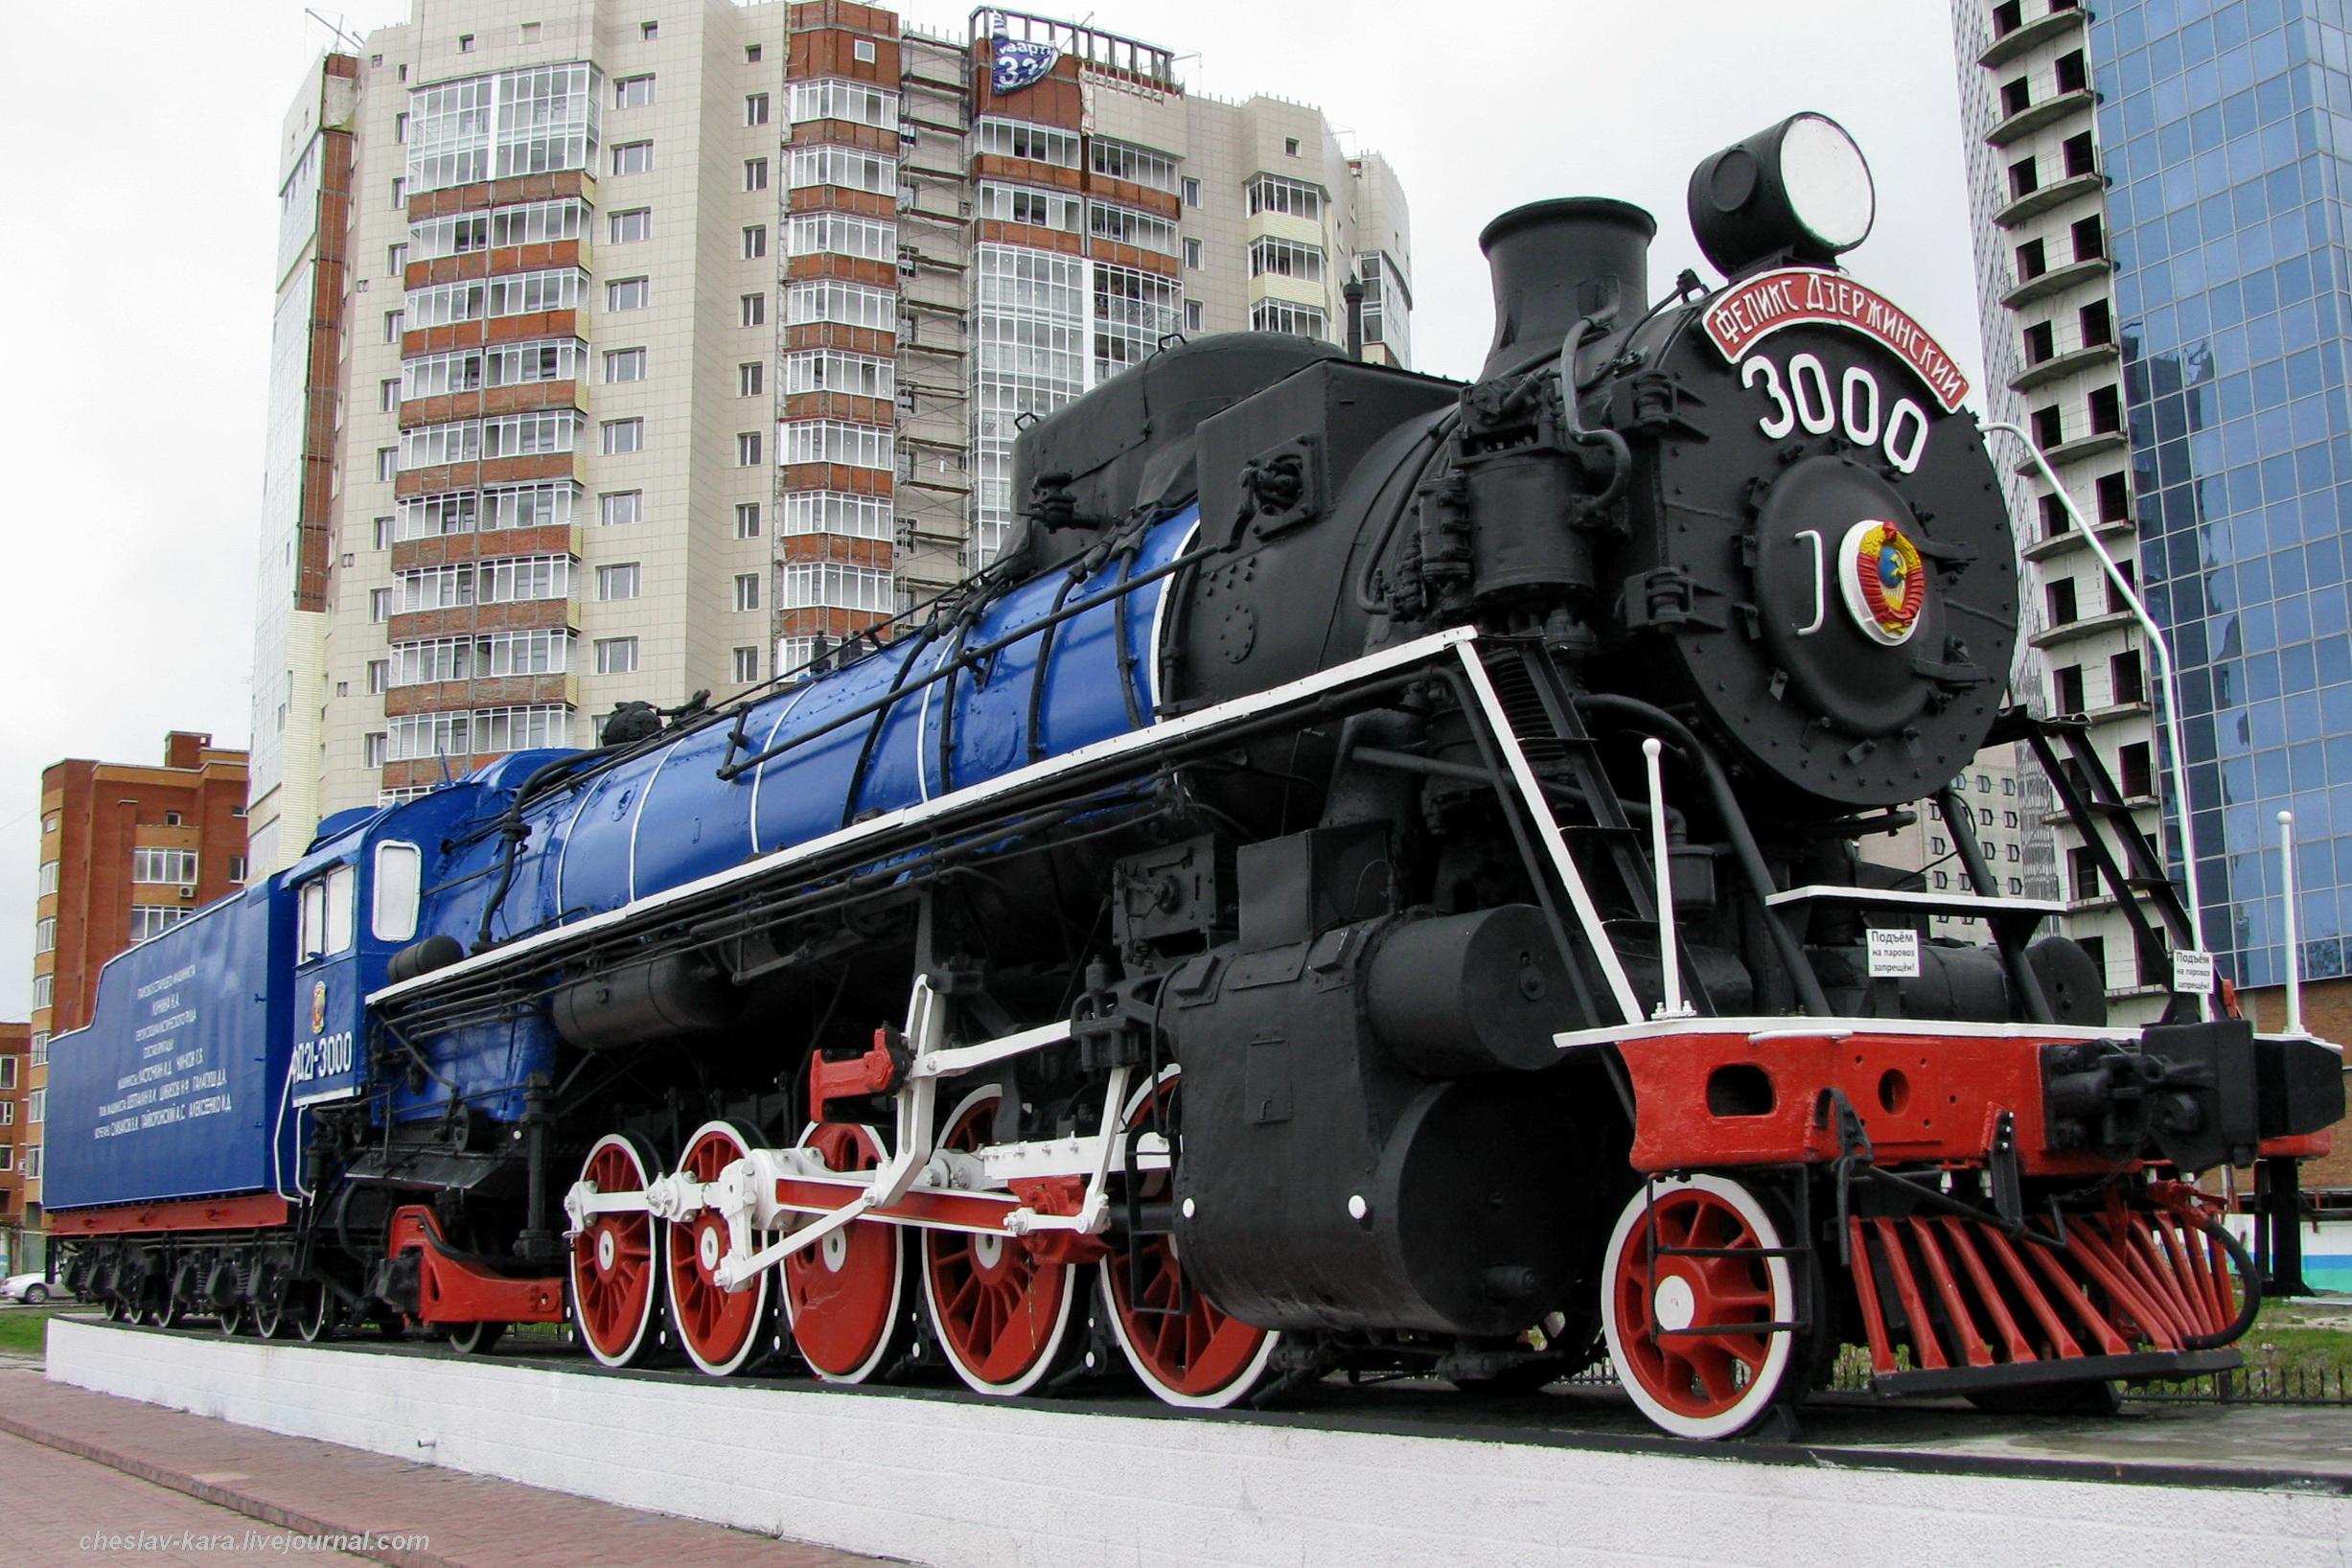 【考证】一台fd21-3000号蒸汽机车纪念碑,一场社会主义竞赛"卢宁运动"